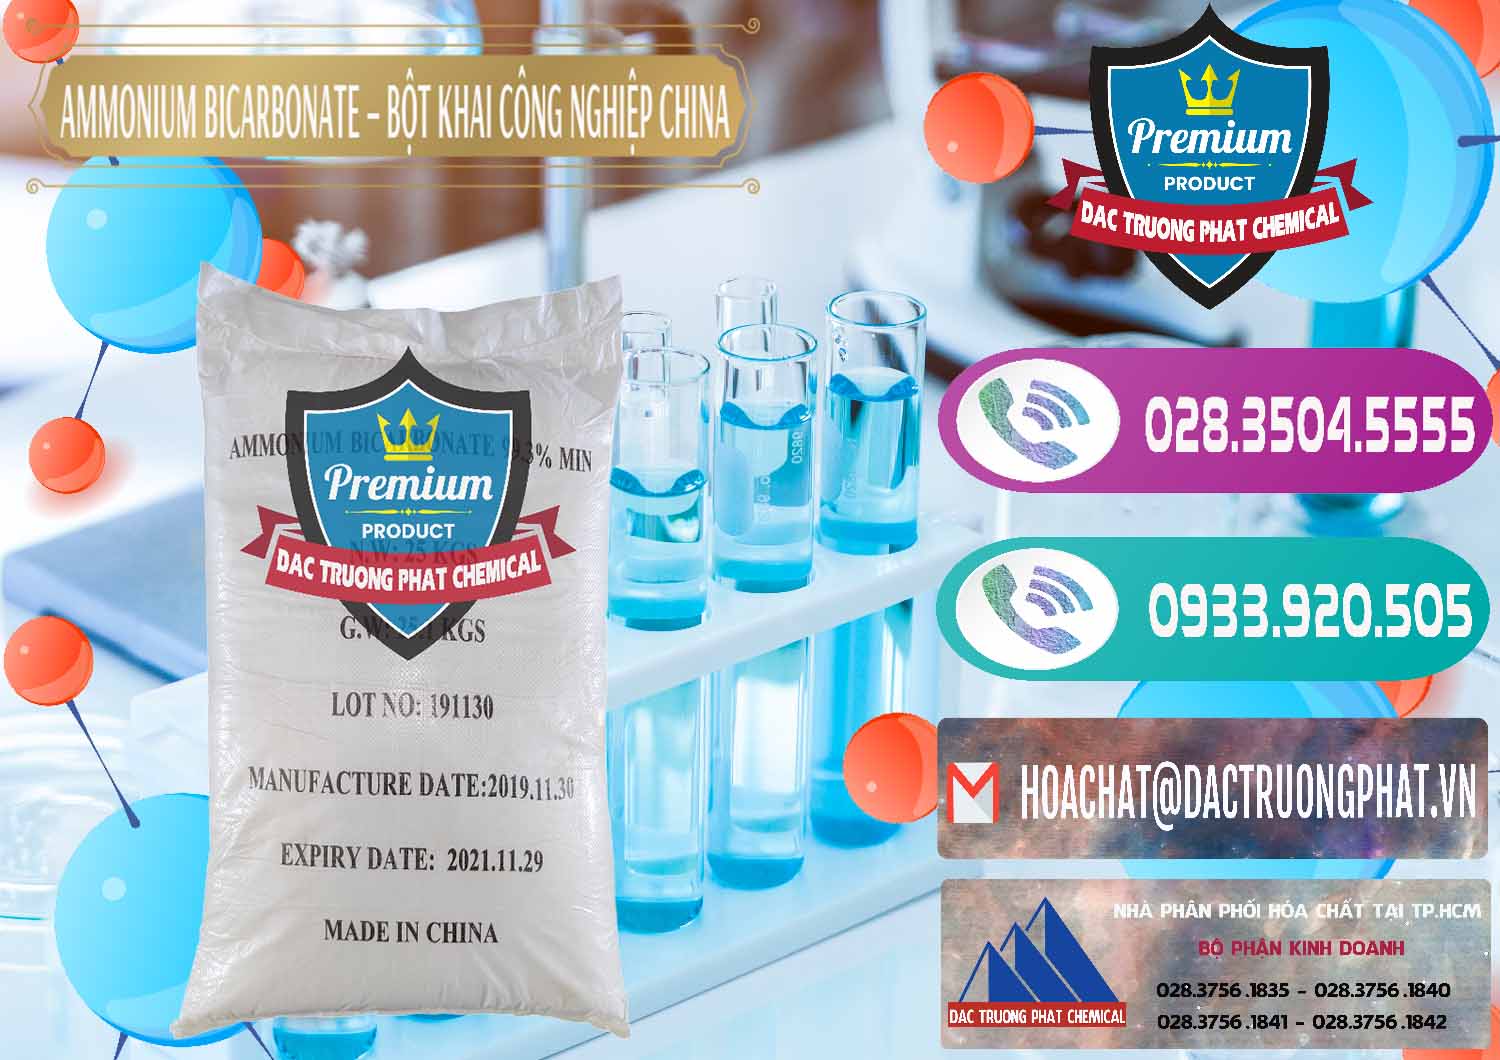 Nơi chuyên nhập khẩu _ bán Ammonium Bicarbonate – Bột Khai Công Nghiệp Trung Quốc China - 0020 - Công ty chuyên bán & phân phối hóa chất tại TP.HCM - hoachatxulynuoc.com